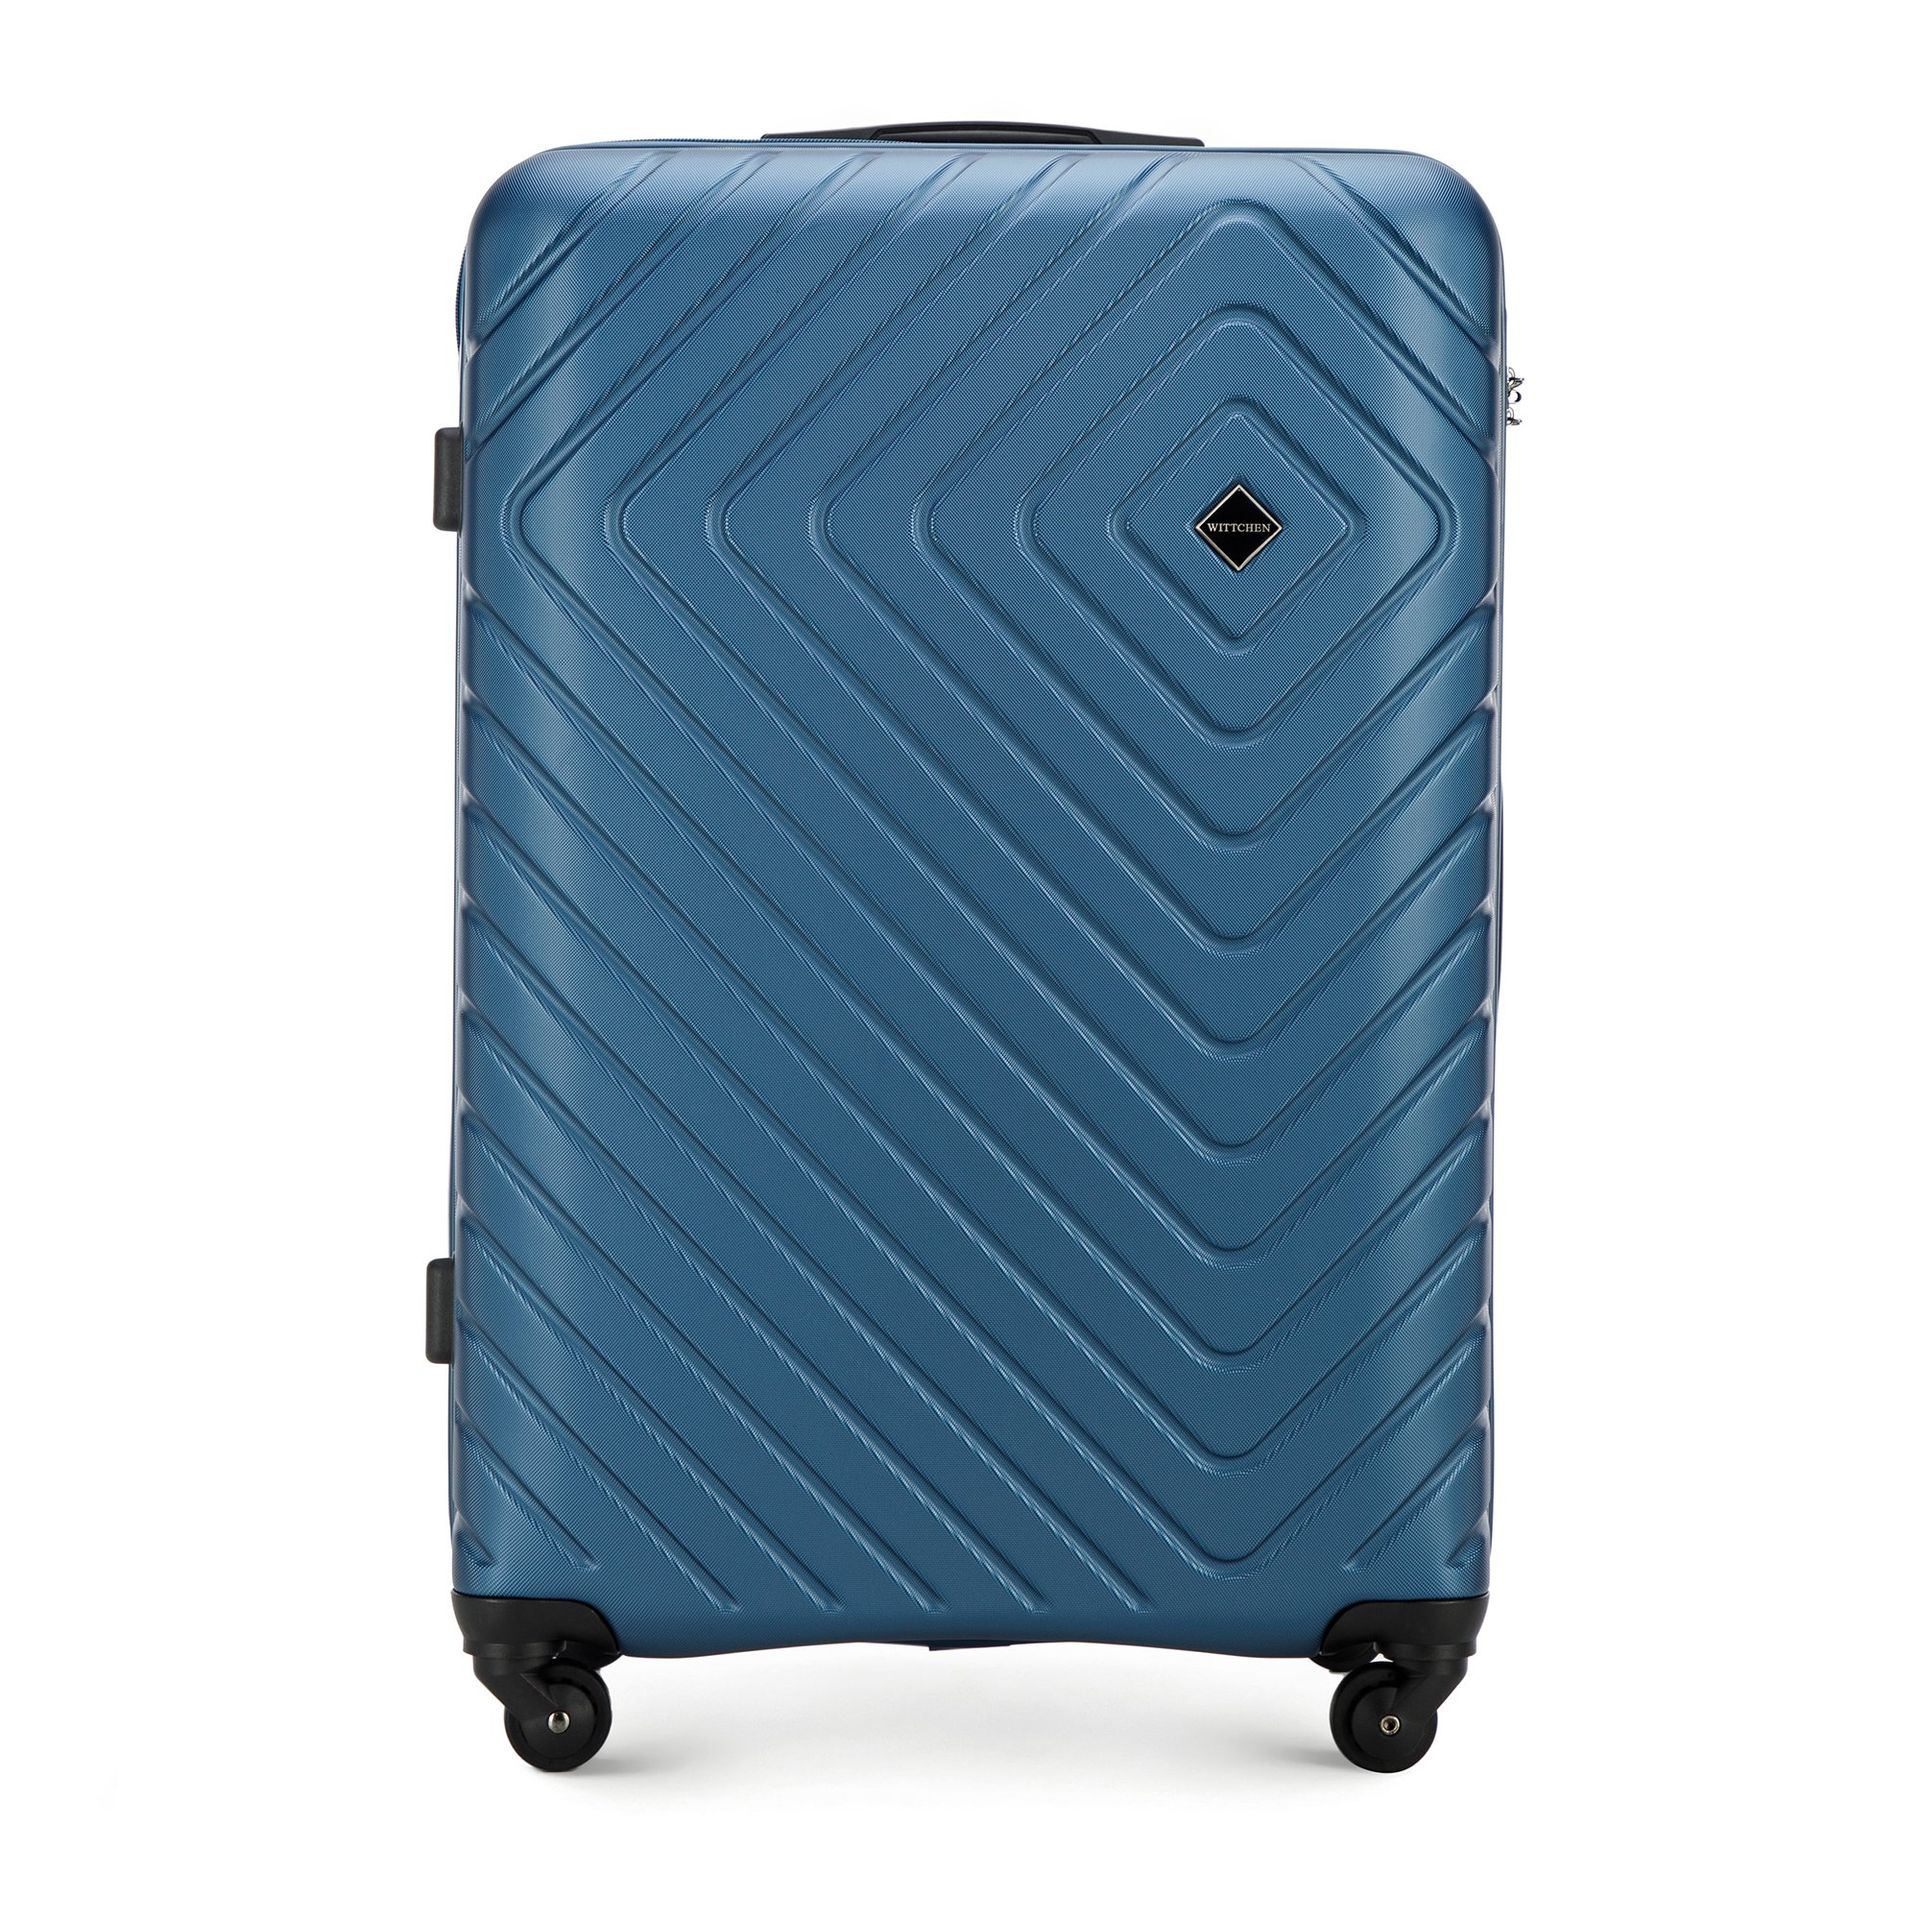 Duża walizka z ABS-u z geometrycznym tłoczeniem